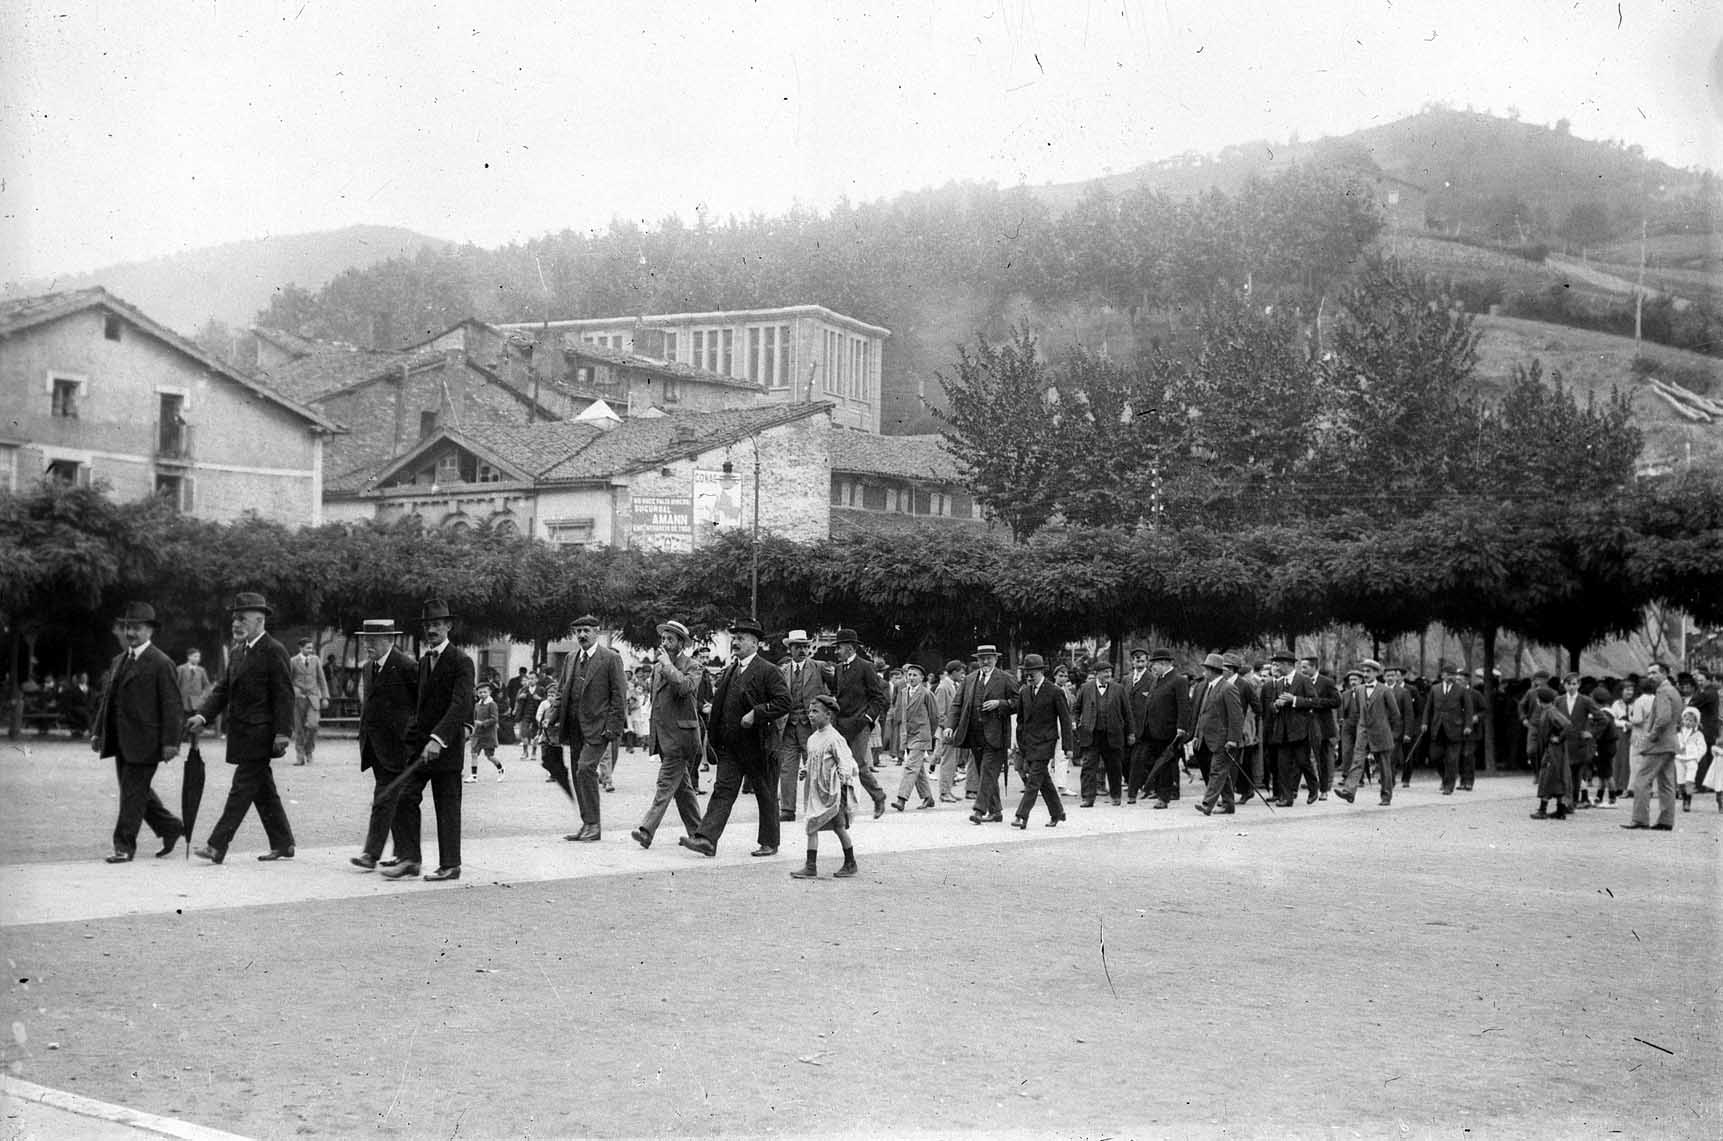 Centenario del Museo de la Armería de Eibar, 1914-2014. Gratitud y homenaje en un extenso programa de actividades.